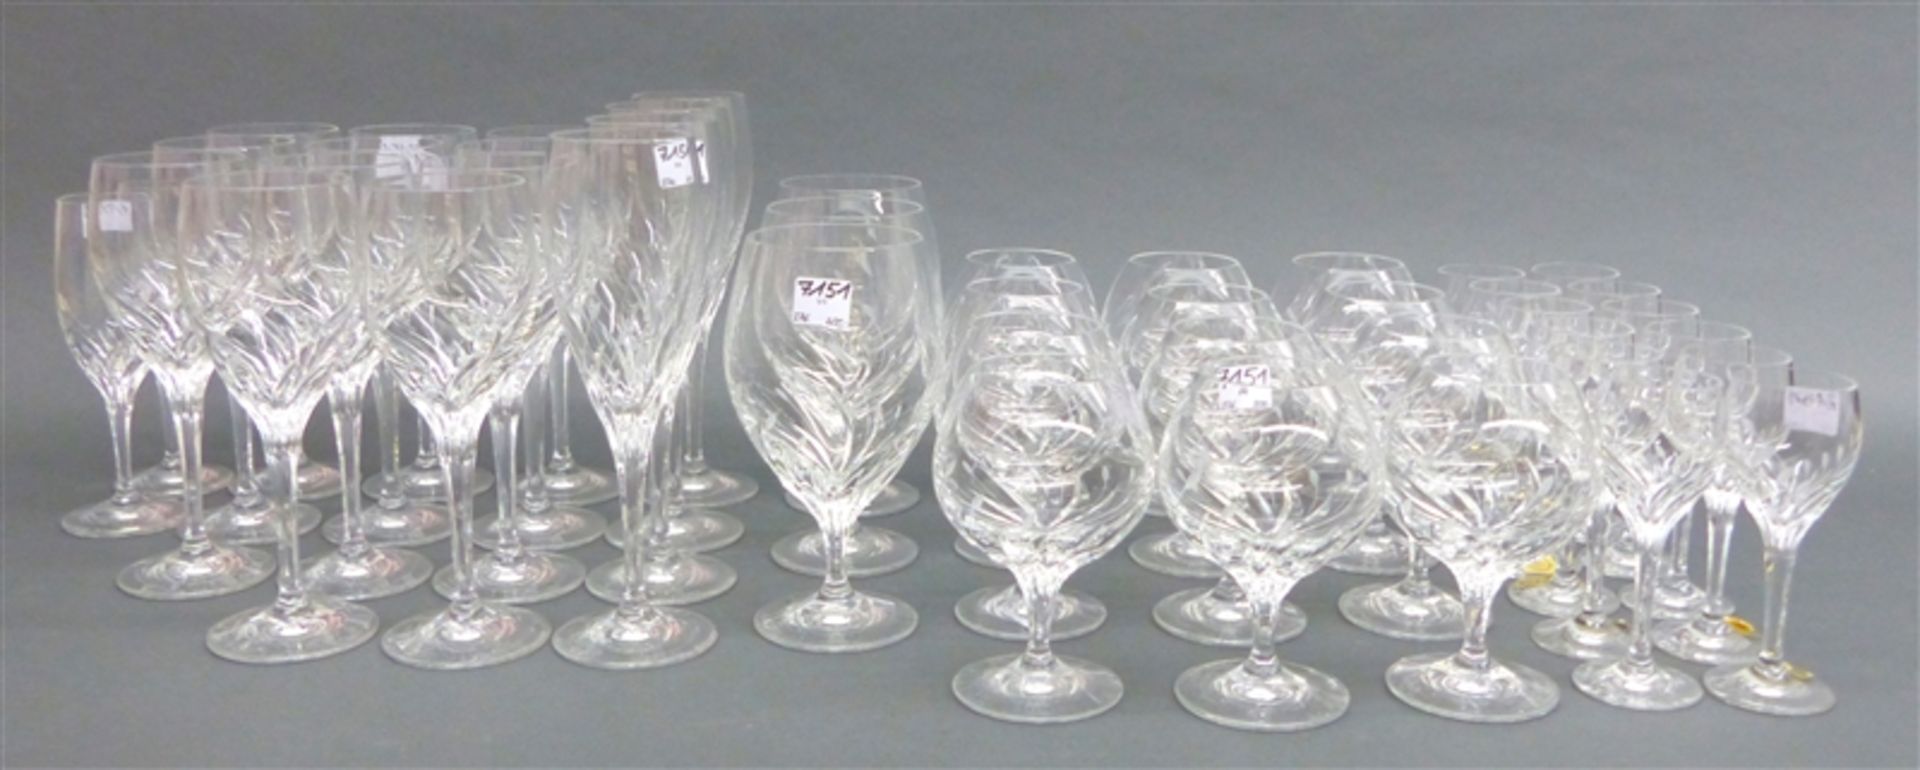 Trinkgarnitur Kristallglas, beschliffen, 12 Likör, 12 Cognac, 11 Wein, 4 Sekt, 3 Cognac-Schwenker, 2